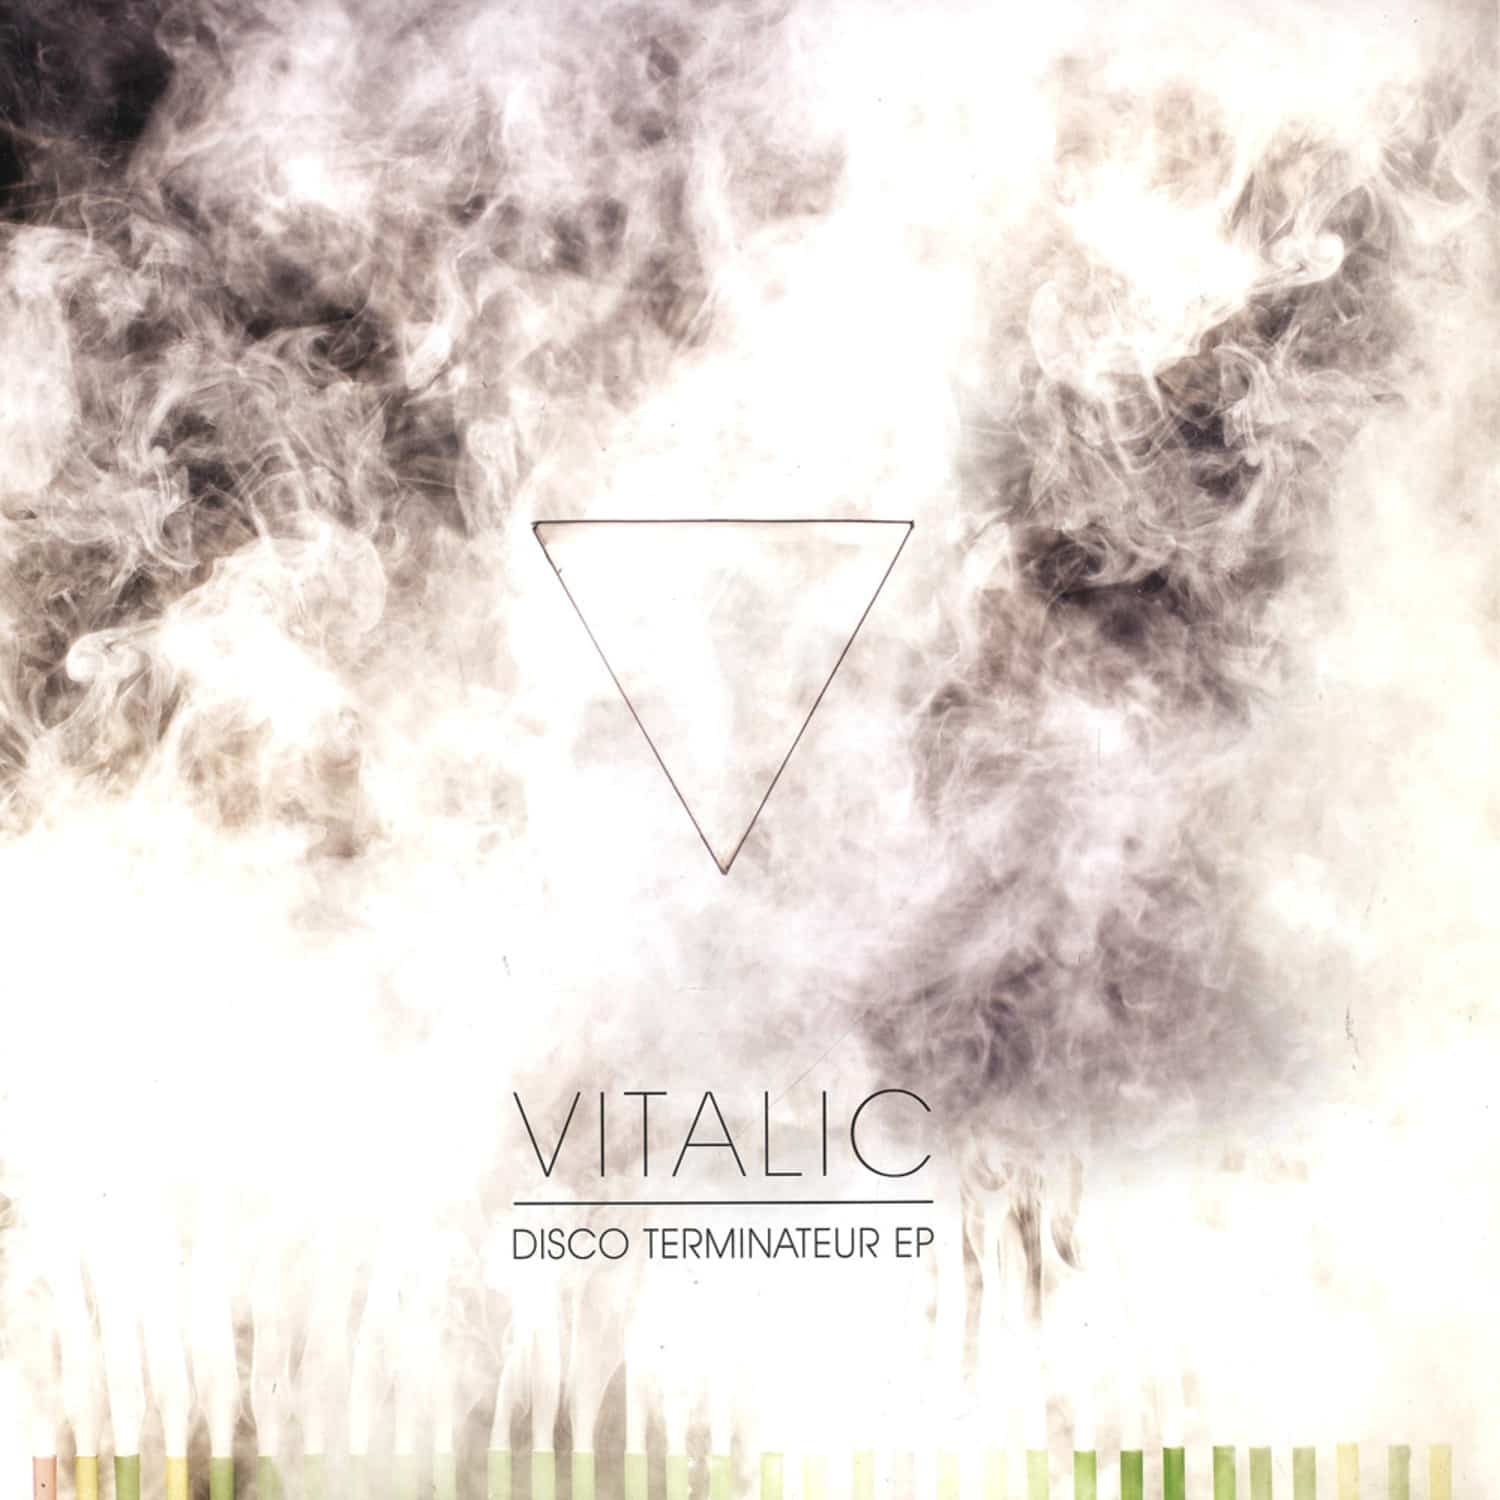 Vitalic - DISCO TERMINATEUR EP 